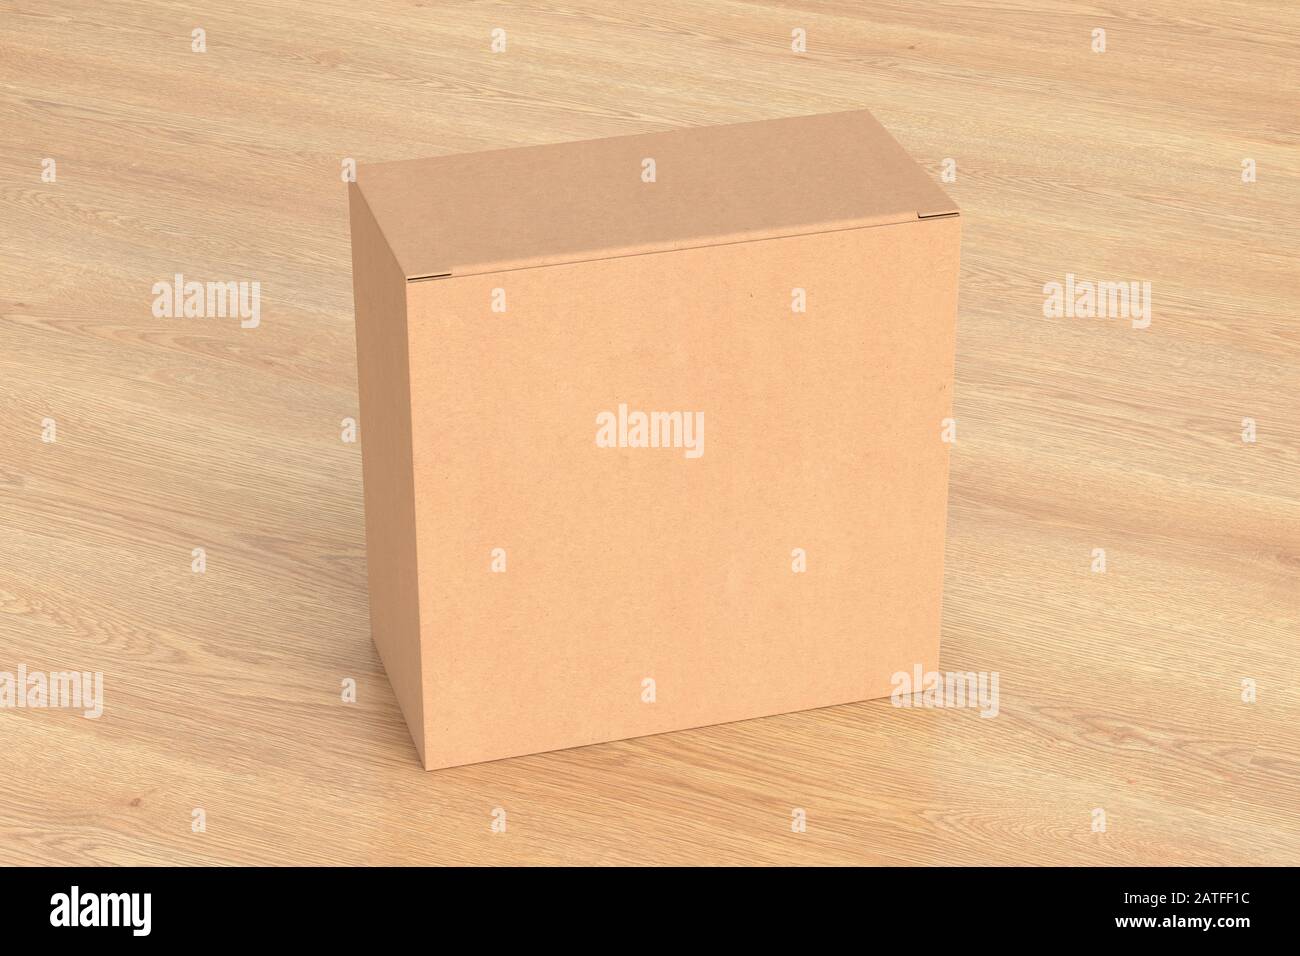 Boîte carrée large en carton vierge avec couvercle rabattable fermé sur fond en bois. Chemin de détourage autour de la maquette de boîte Banque D'Images